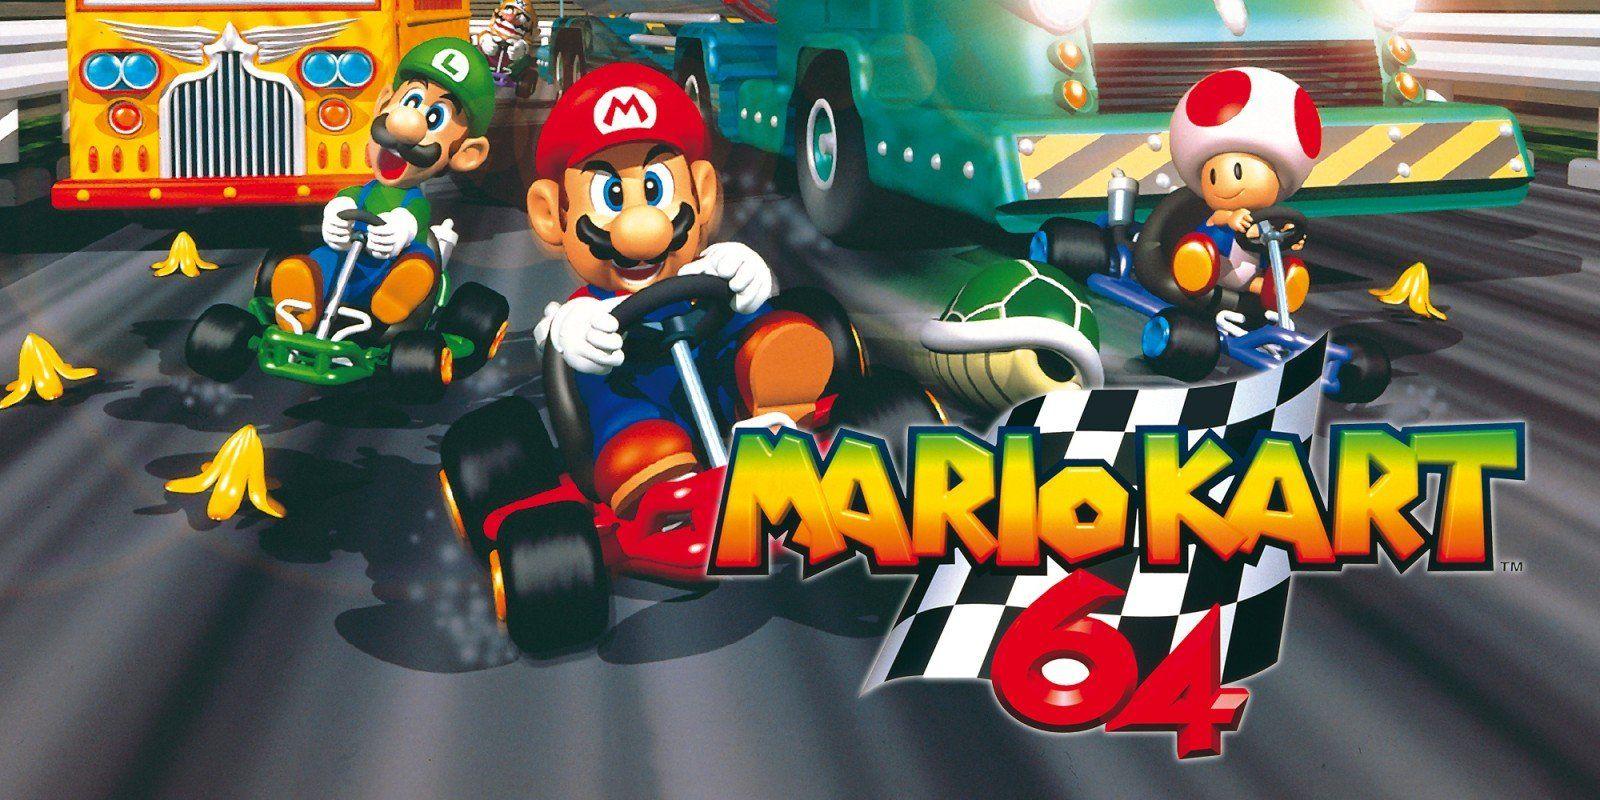 Mario Kart 64 Wallpapers Top Free Mario Kart 64 Backgrounds